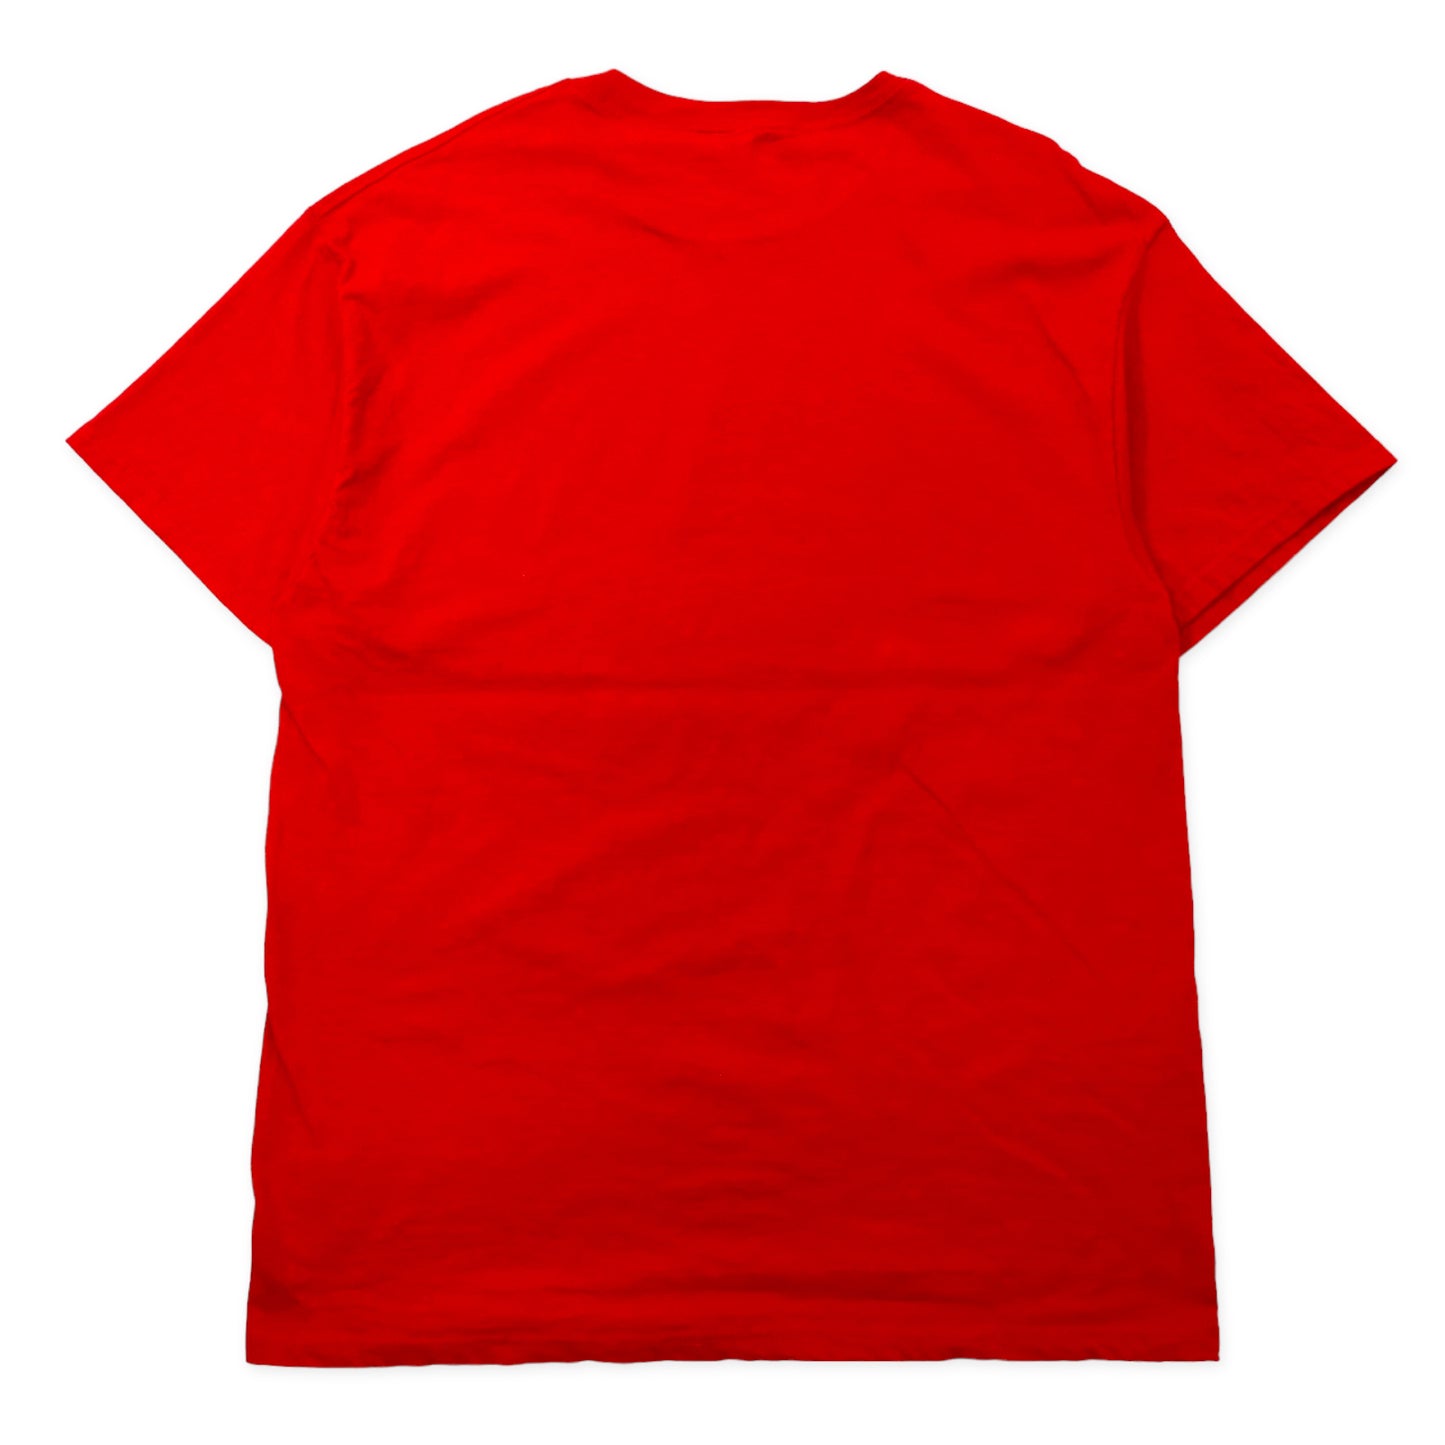 BRIAR CREEK カレッジプリント Tシャツ XL レッド コットン NCAA フットボール NEBRASKA HUSKERS ビッグサイズ メキシコ製